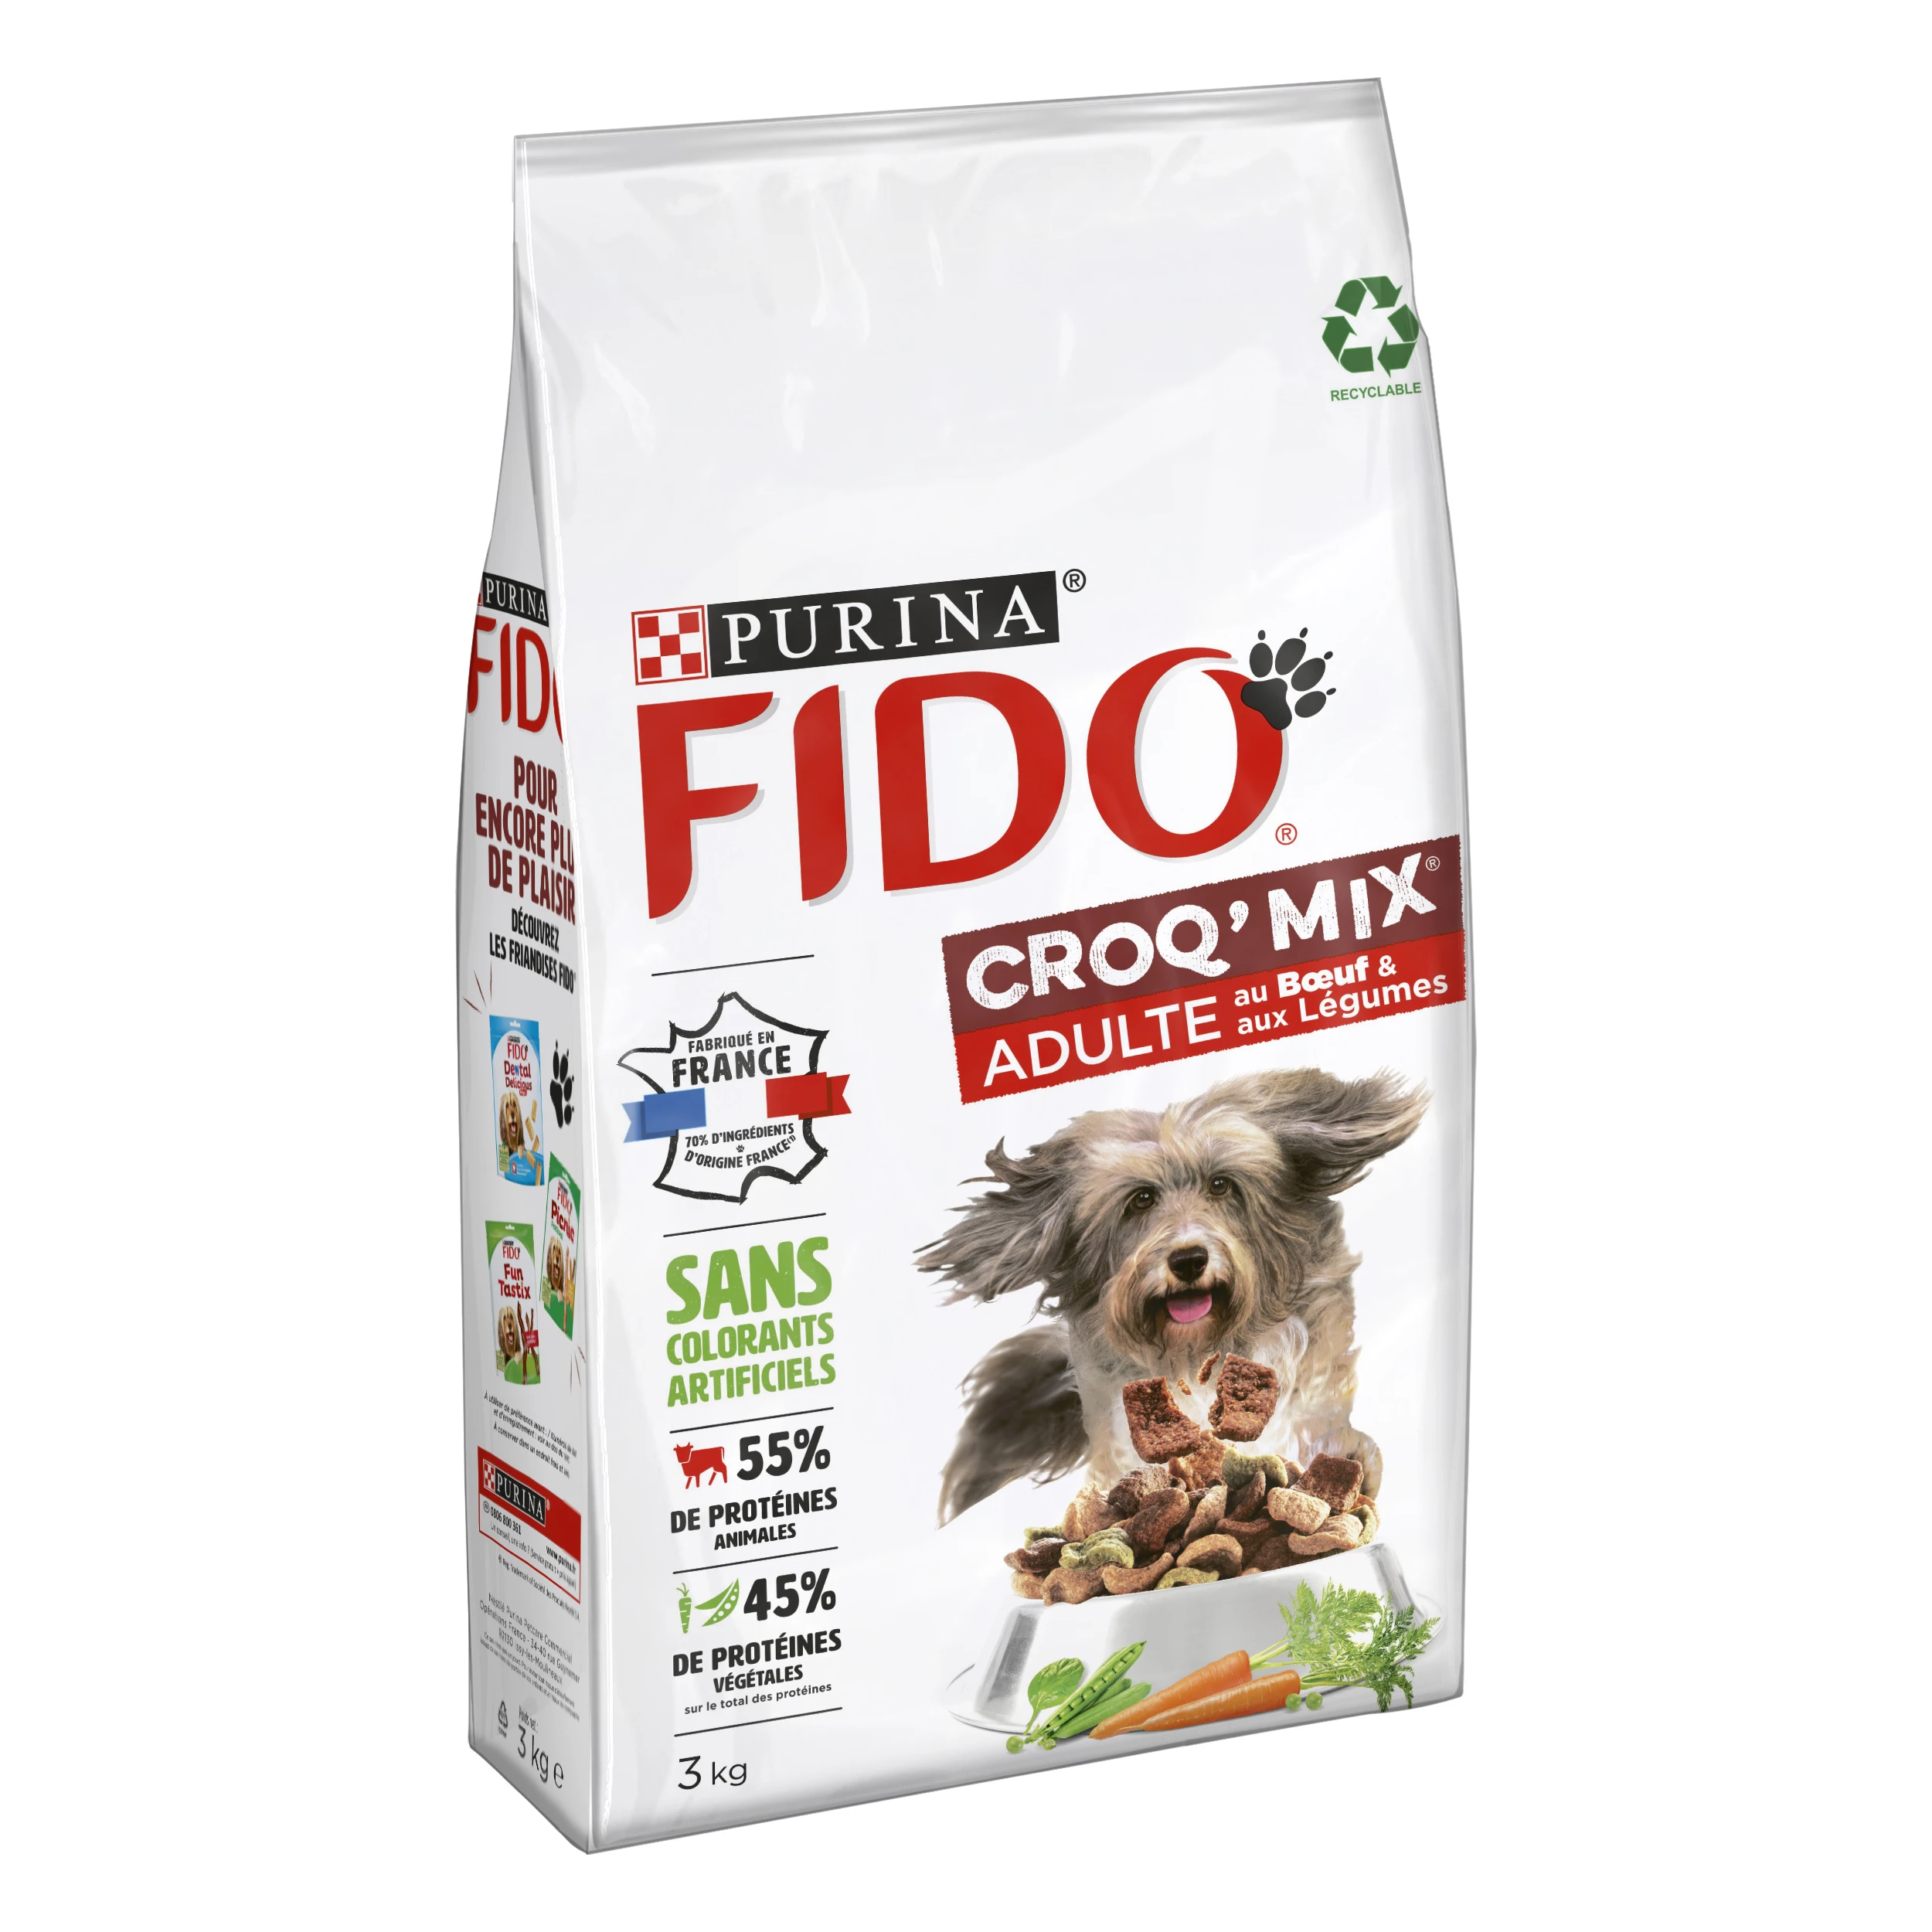 Croq' 成年犬混合粗粮，含牛肉和蔬菜 3 公斤 - PURINA FIDO